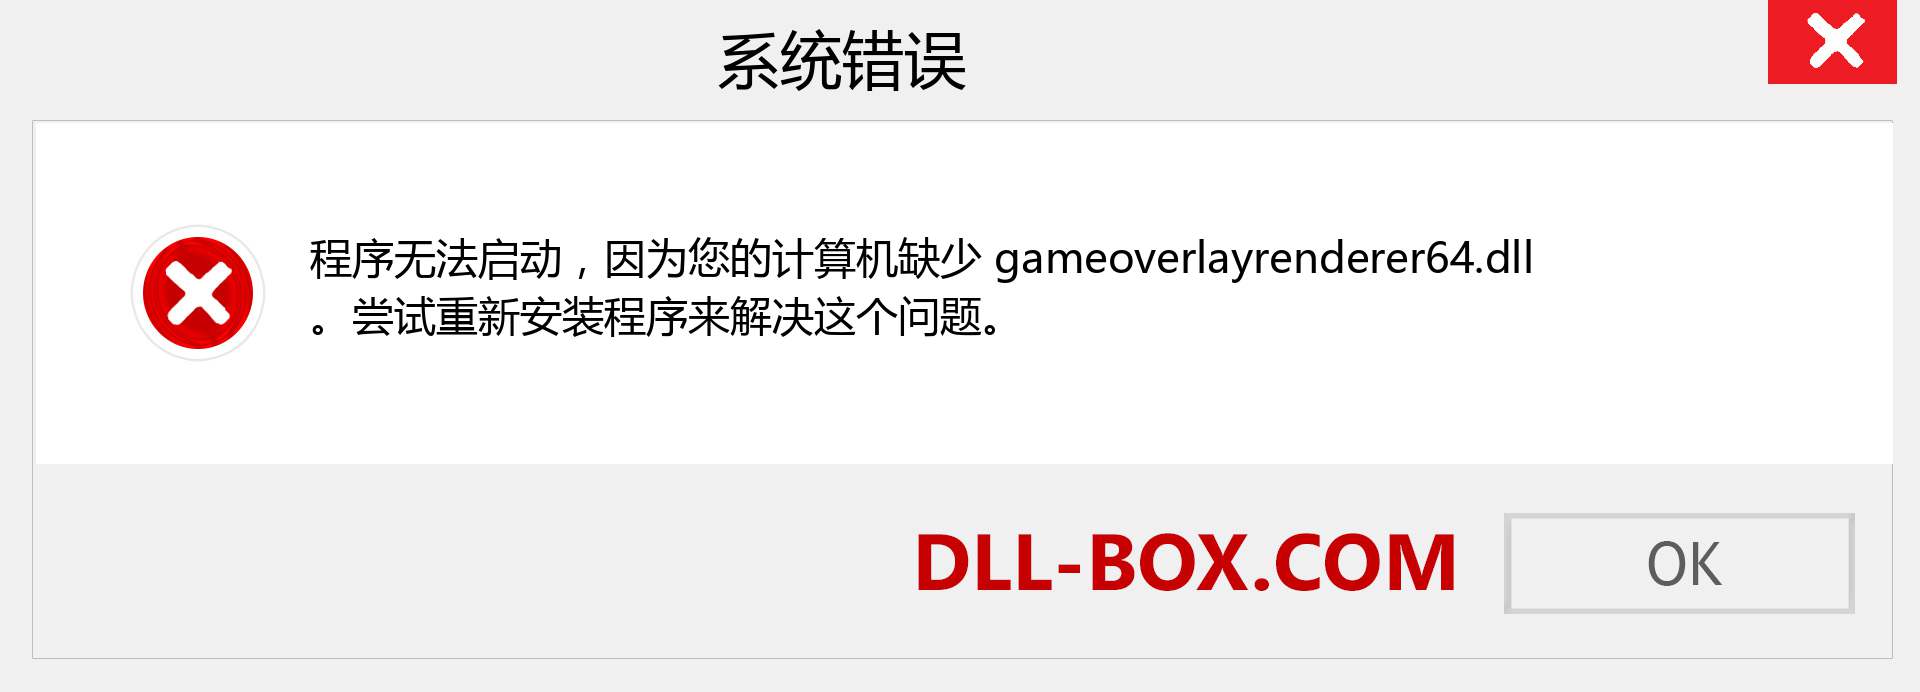 gameoverlayrenderer64.dll 文件丢失？。 适用于 Windows 7、8、10 的下载 - 修复 Windows、照片、图像上的 gameoverlayrenderer64 dll 丢失错误